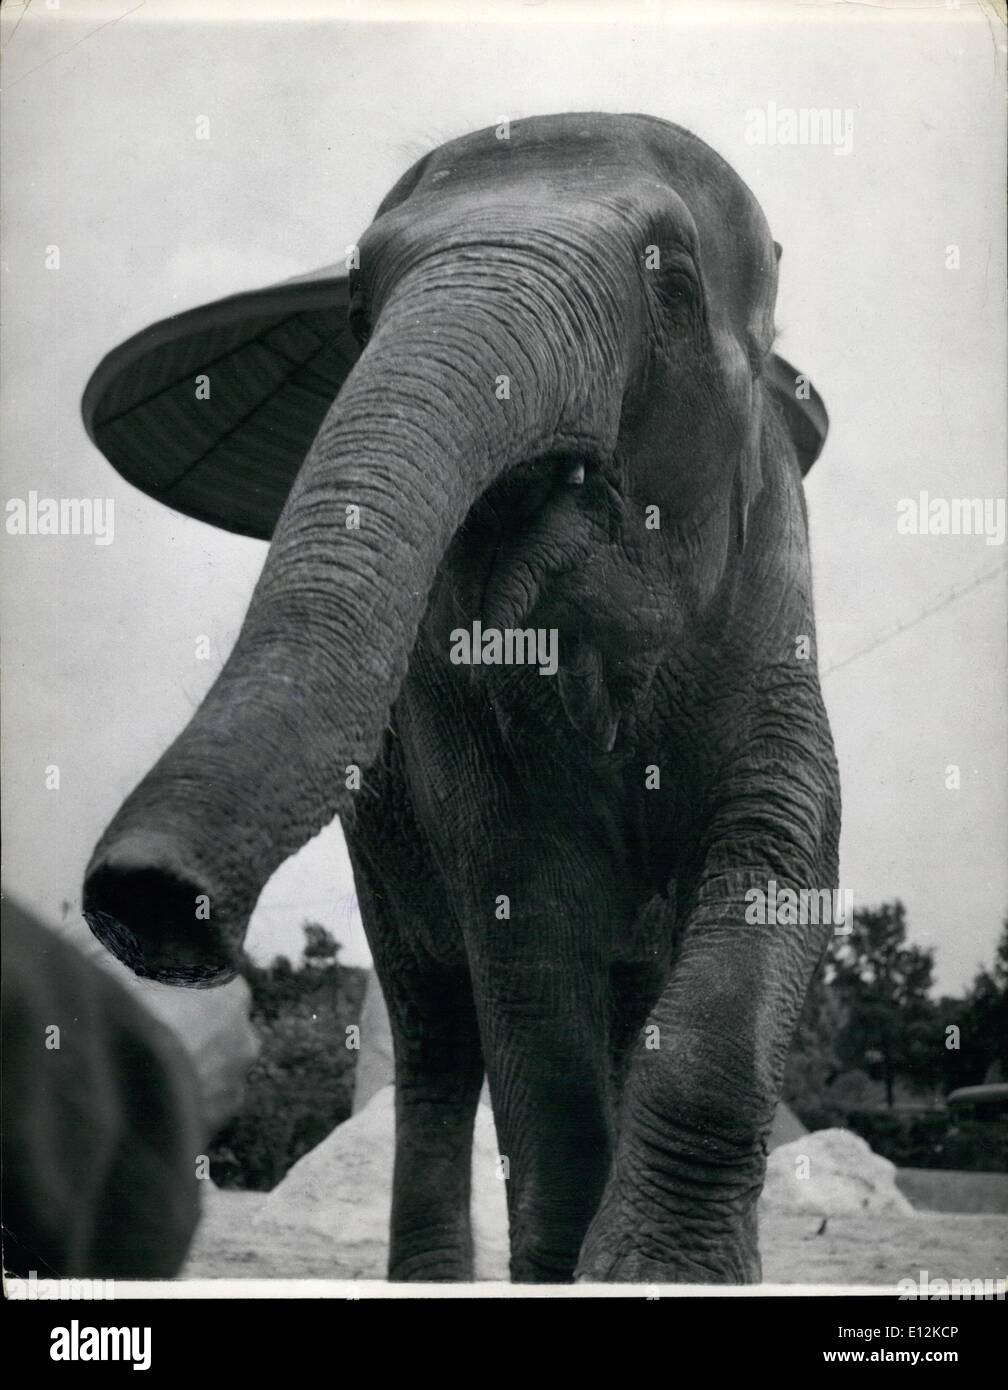 El 24 de febrero, 2012 - El 3-D Elefante!: La ululante tronco parece que se  va a girar hacia la derecha de la imagen y los pies a un ritmo lento, pesado